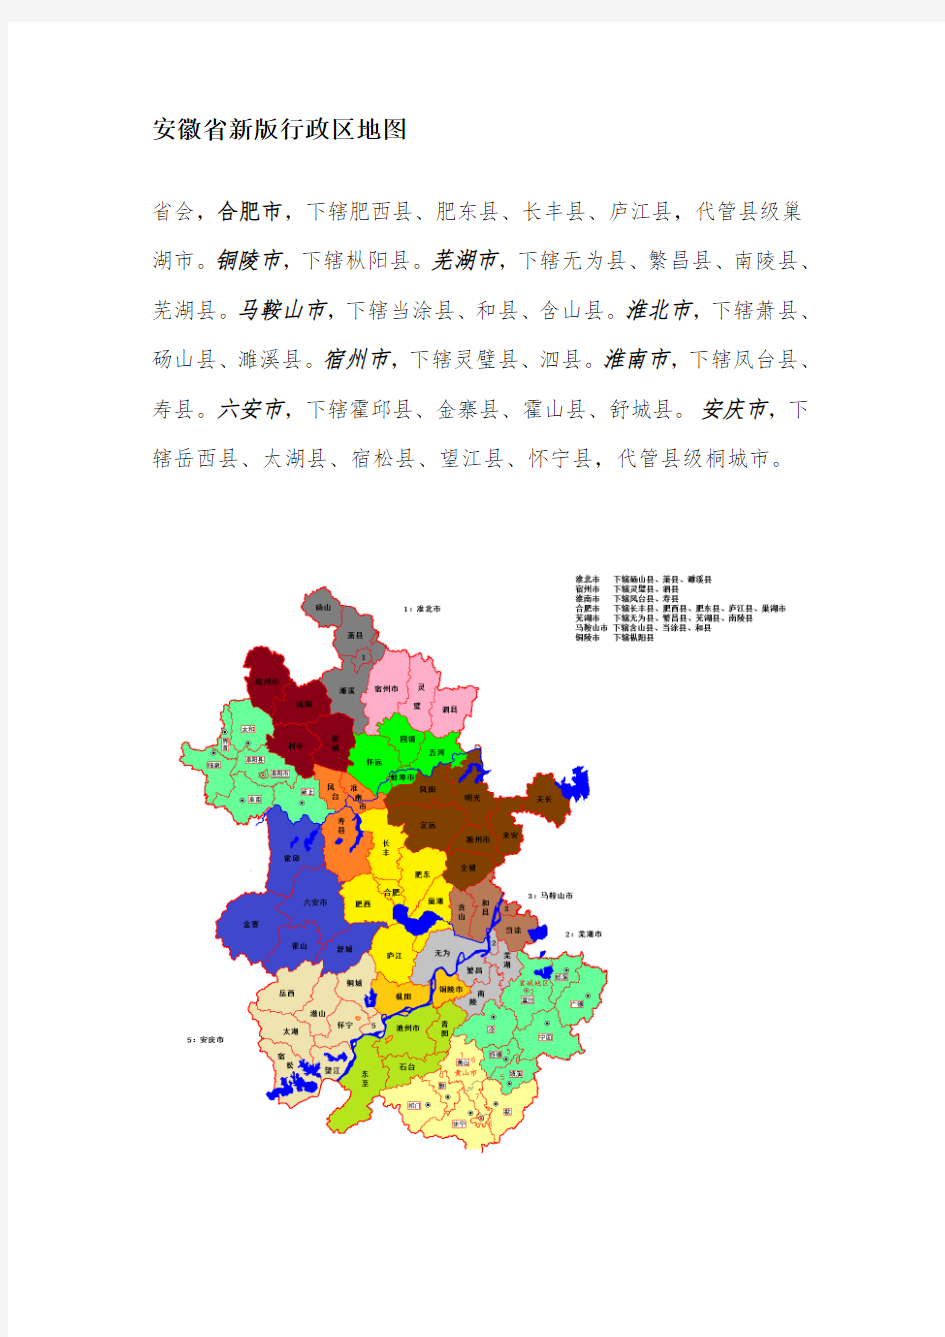 安徽省新版行政区地图